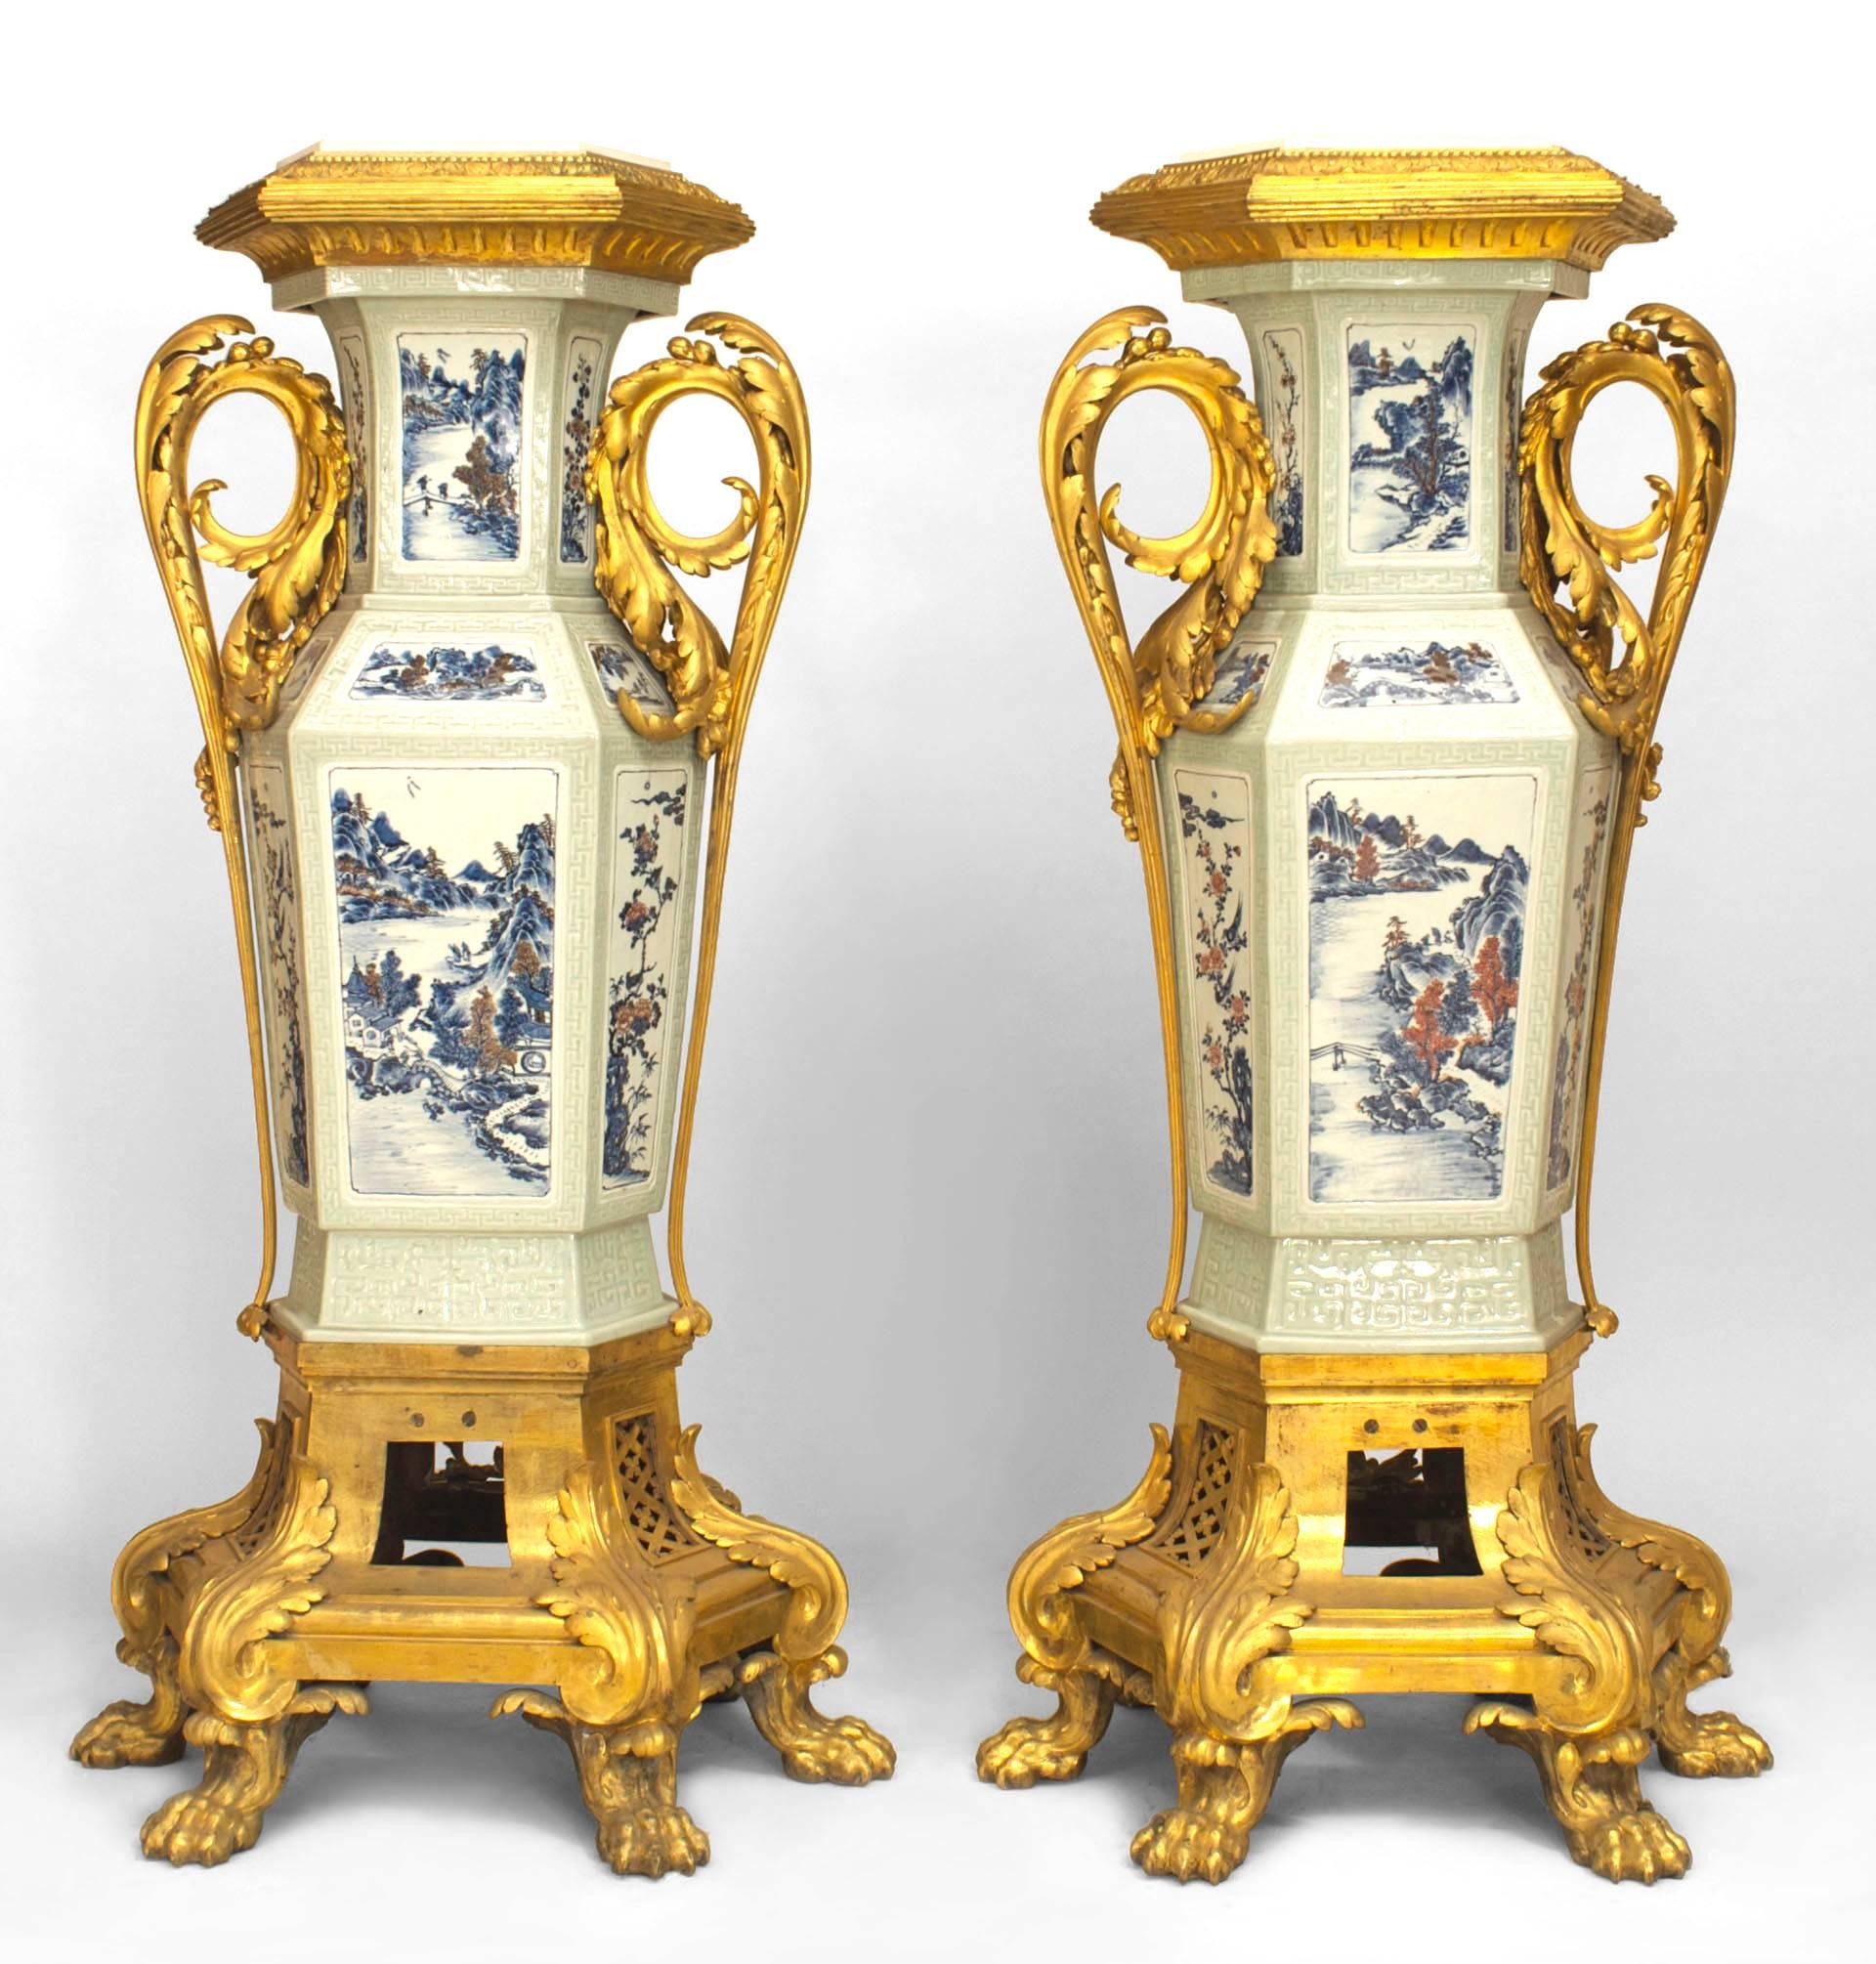 Zwei französische Sockel im Louis XV-Stil (19. Jh.) mit asiatischem Celadon-Porzellan und bronzefarbenem Girlandenbesatz sowie Sockel mit Krallenfüßen.
